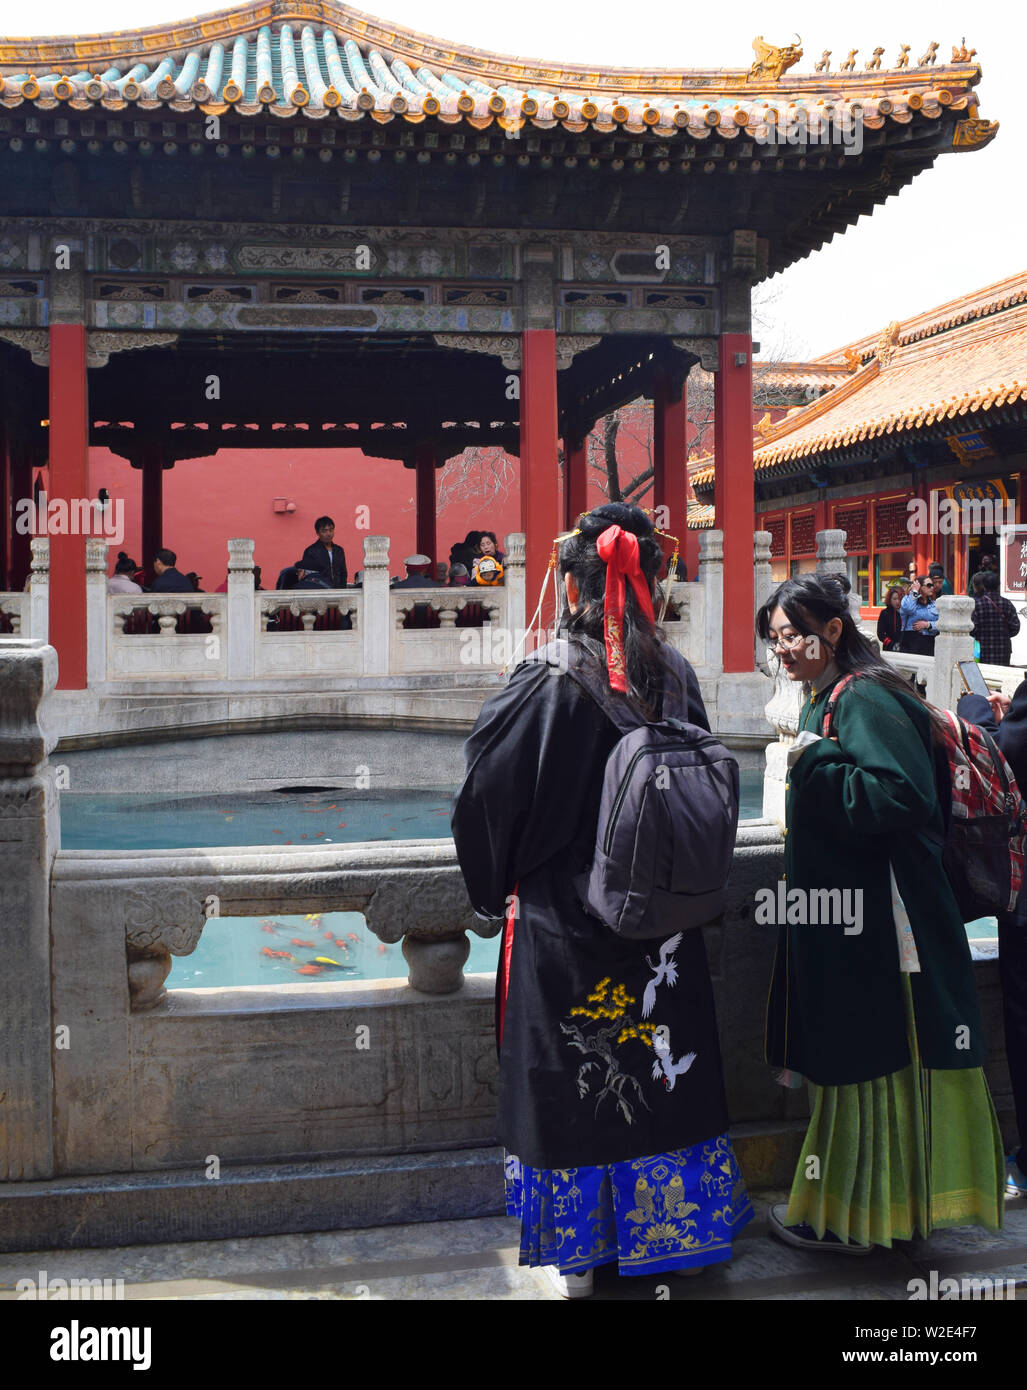 Pechino, Cina, 30 marzo 2019: Le donne indossano kimono tradizionali in un tempio della Città Proibita di Pechino. Foto Stock